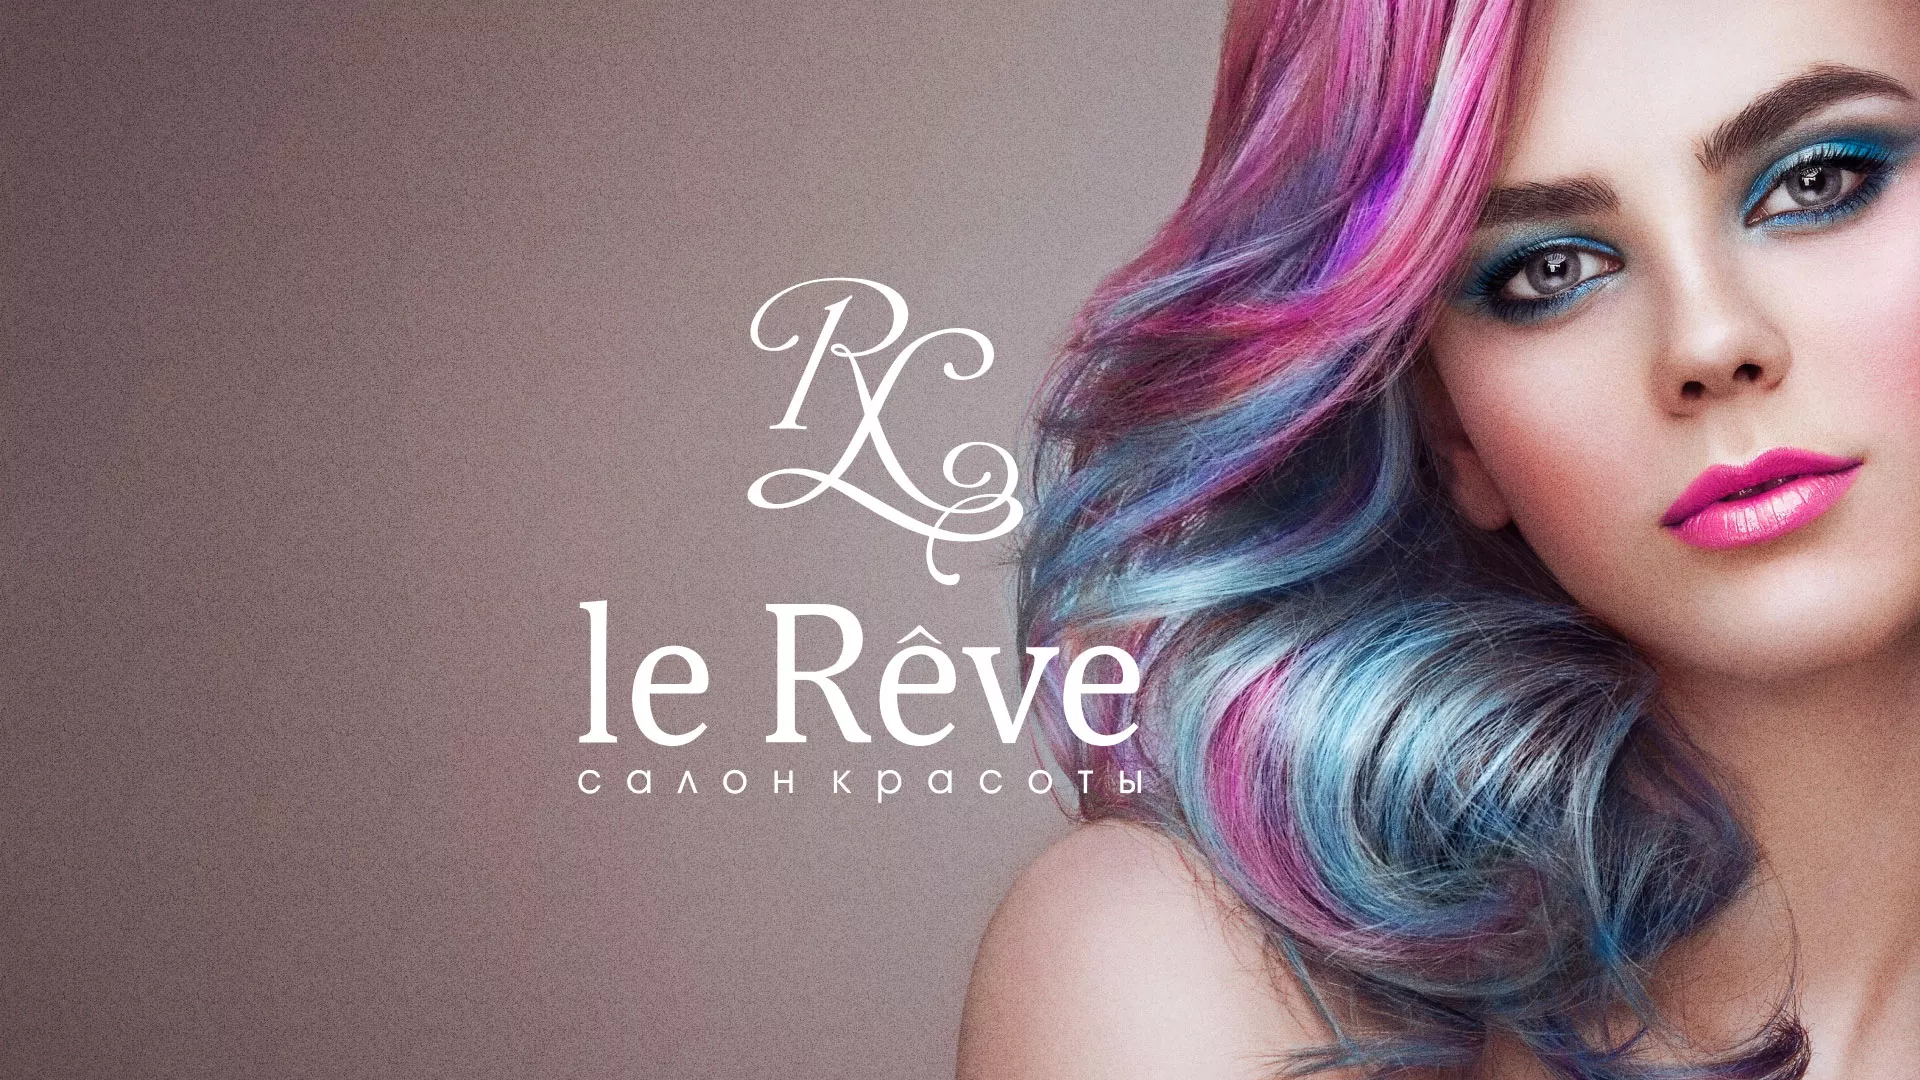 Создание сайта для салона красоты «Le Reve» в Баймаке